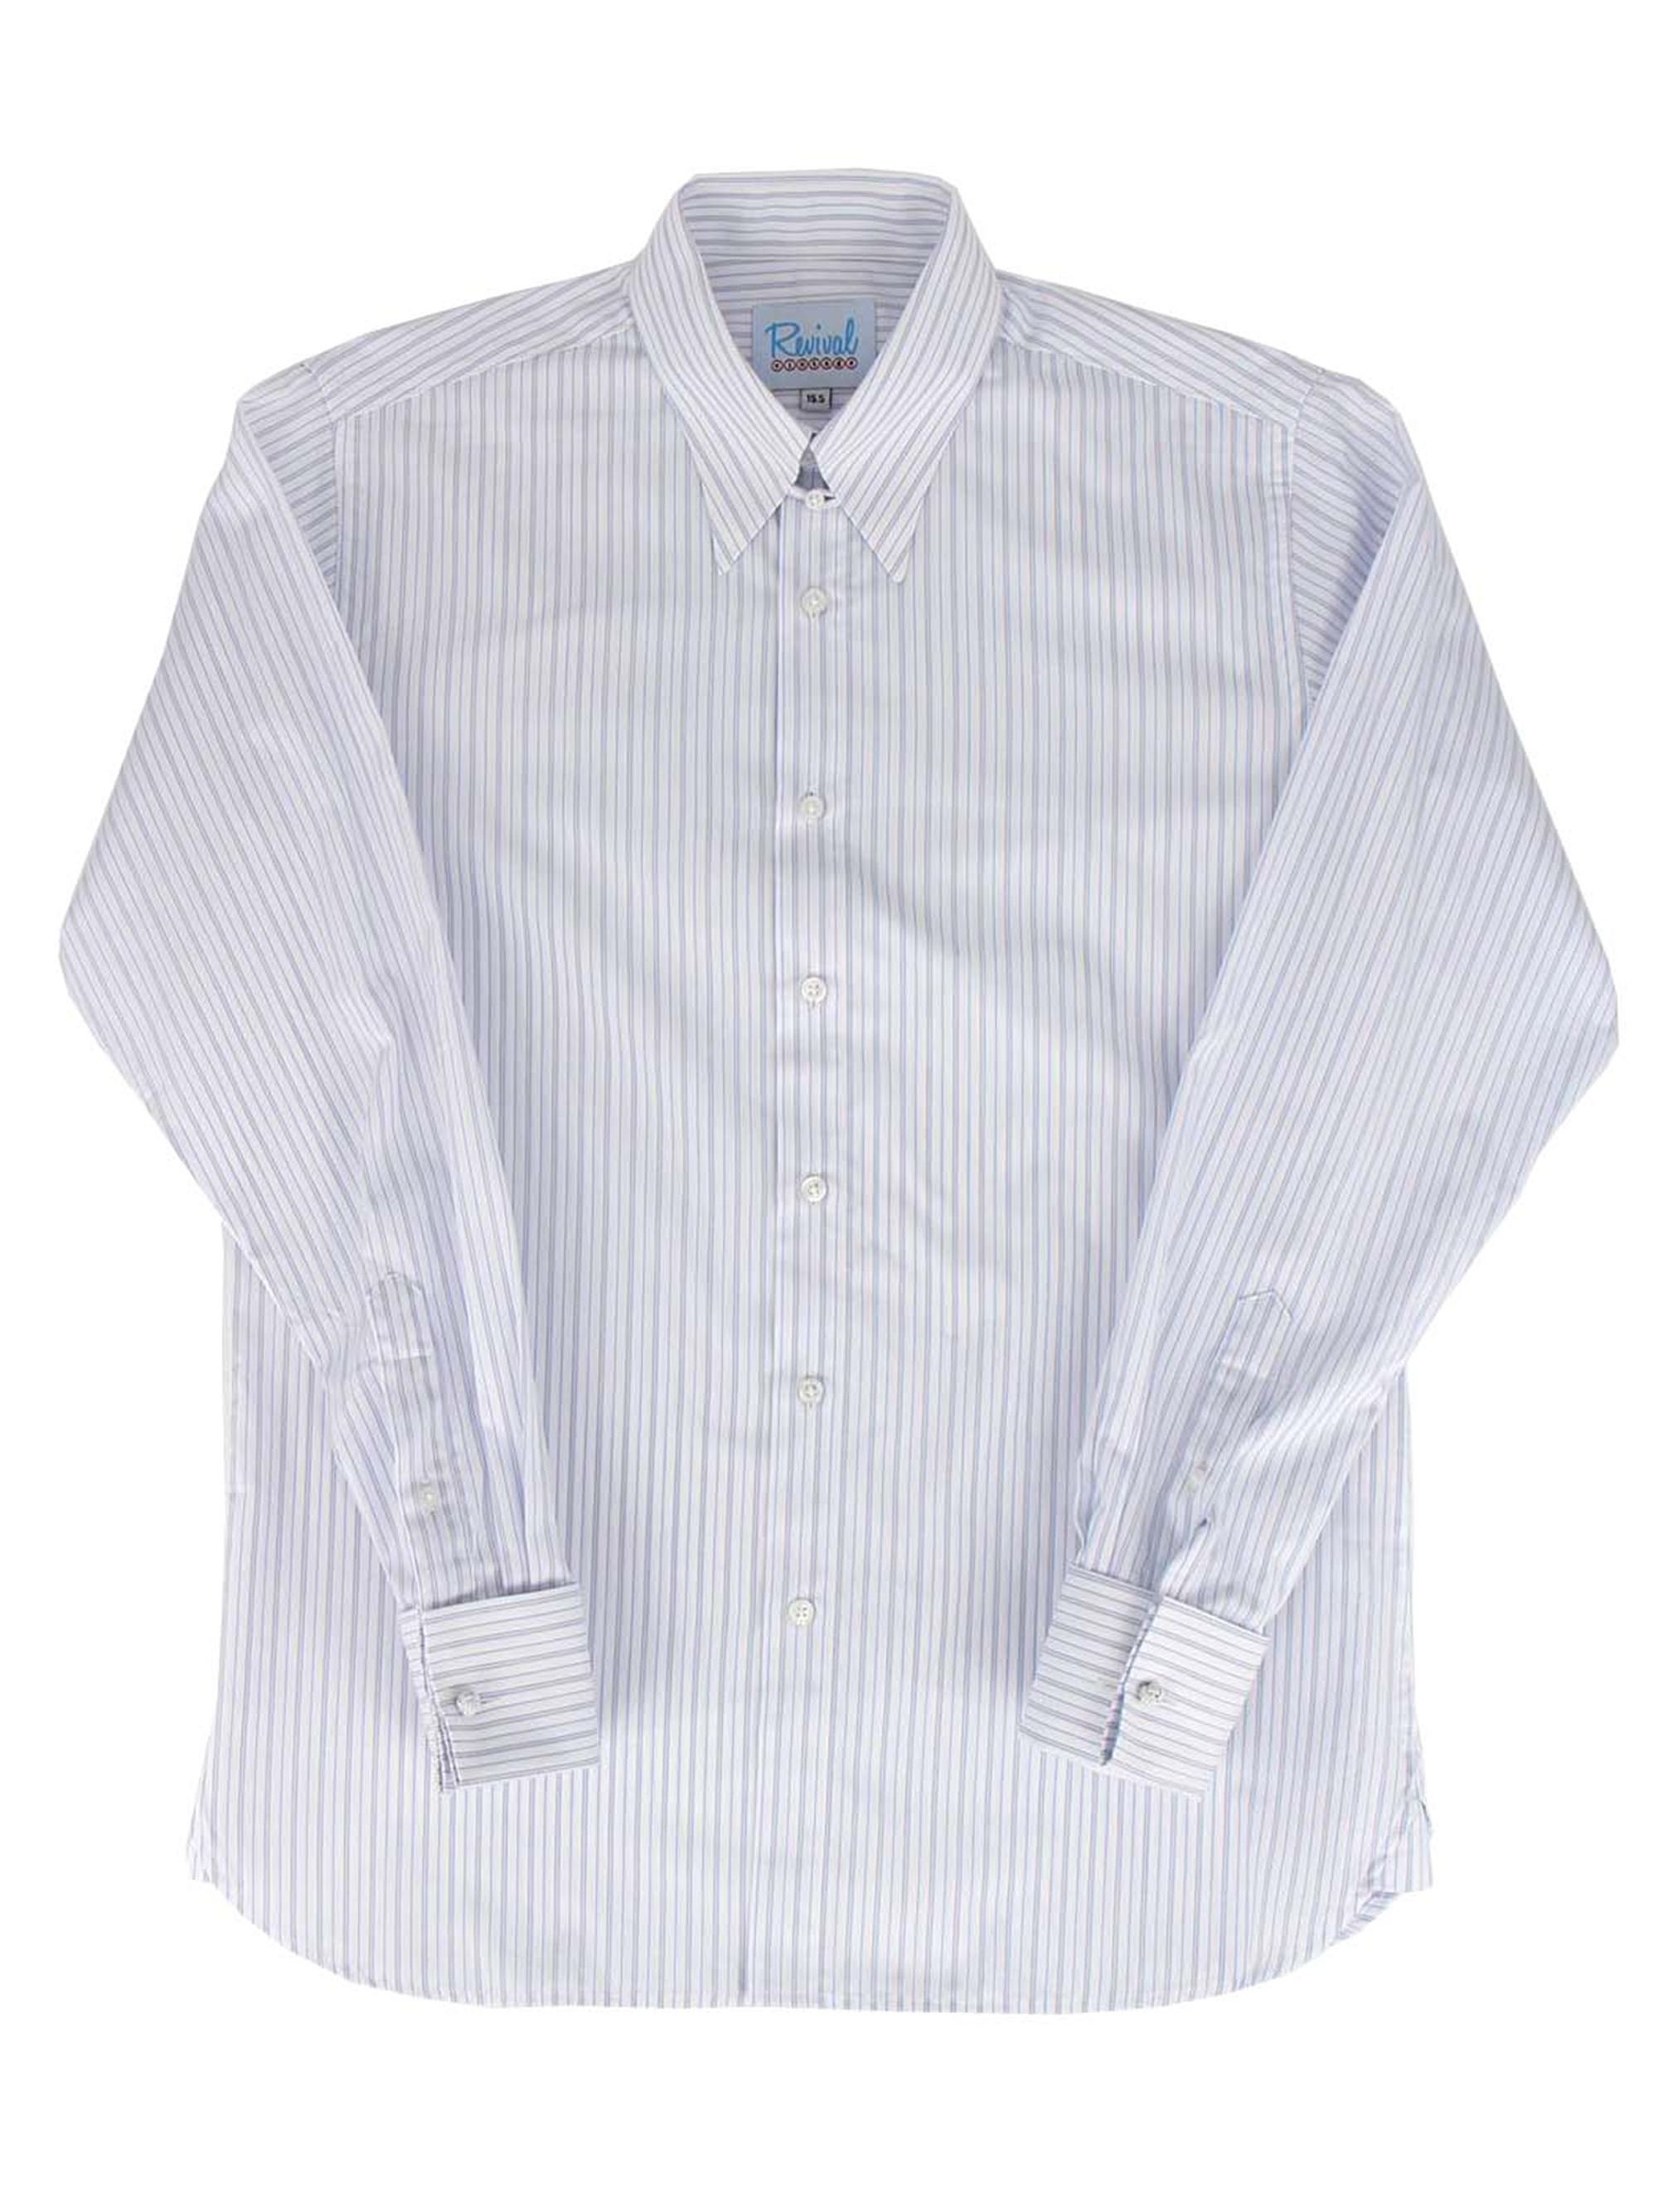 1940s Mens Style Shirt London Stripe Spearpoint Collar Mens | Etsy